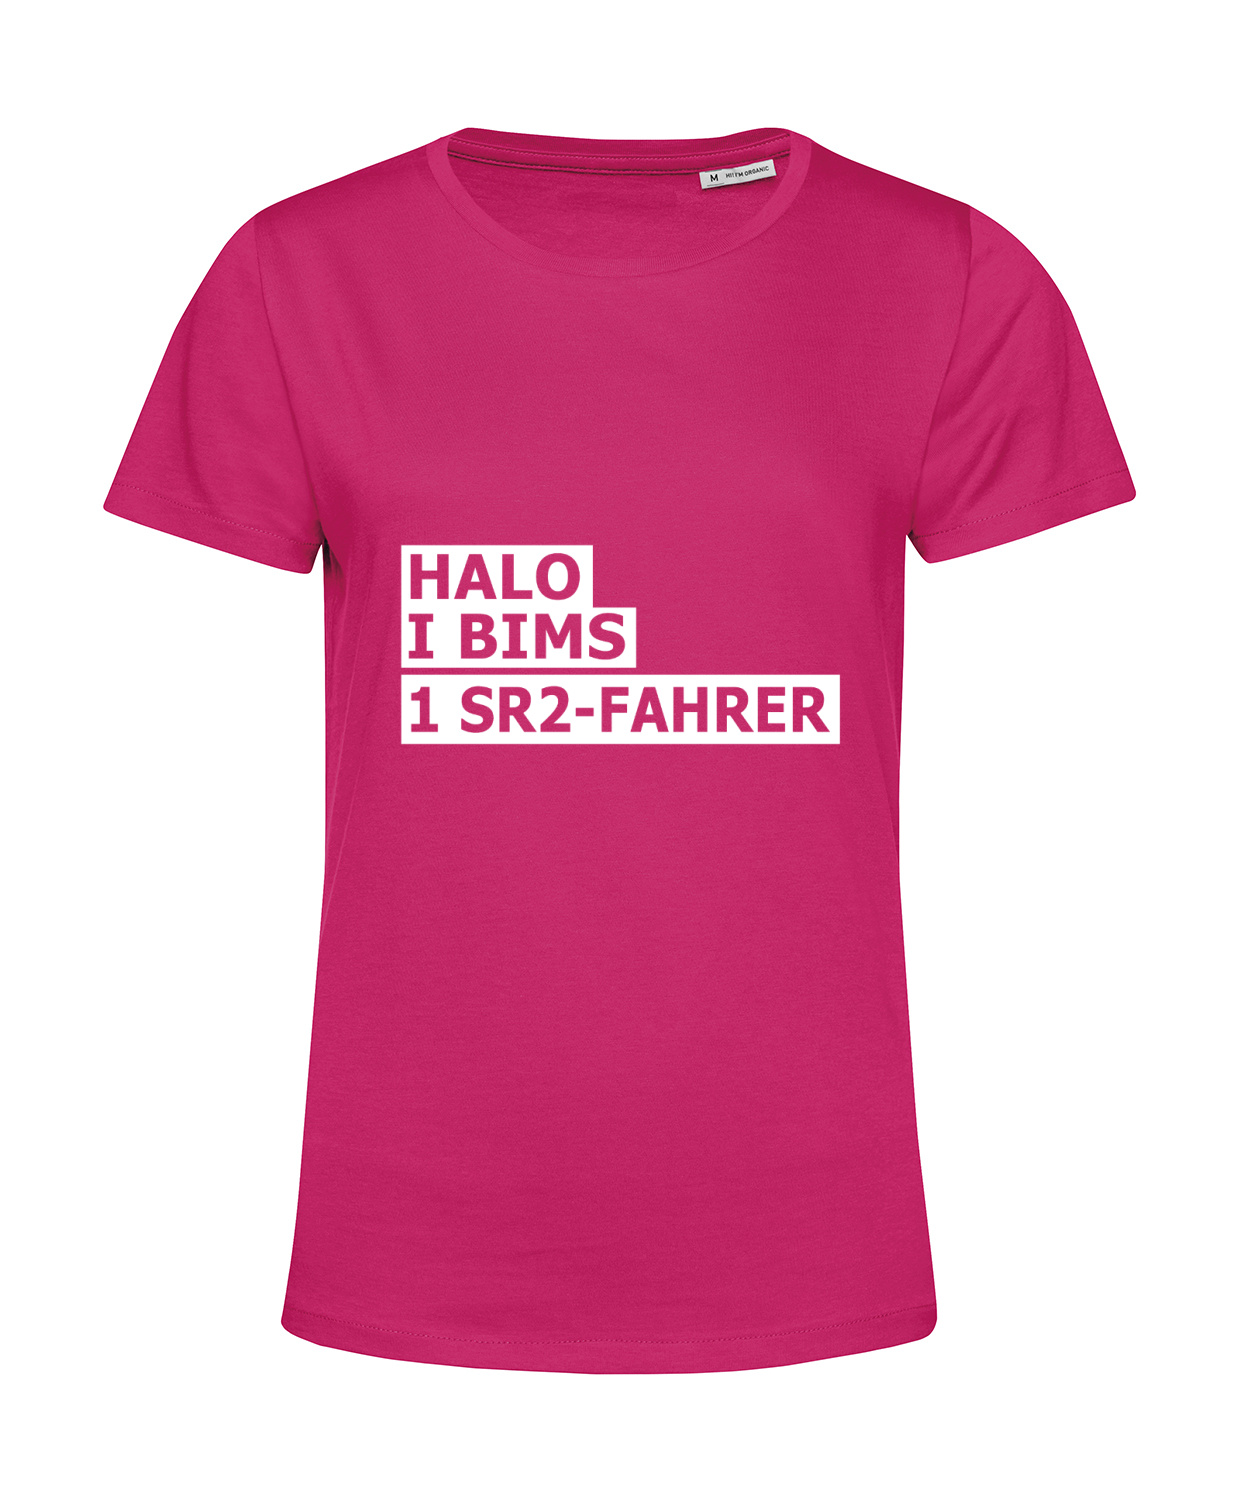 Nachhaltiges T-Shirt Damen 2Takter - Halo I bims 1 SR2-Fahrer